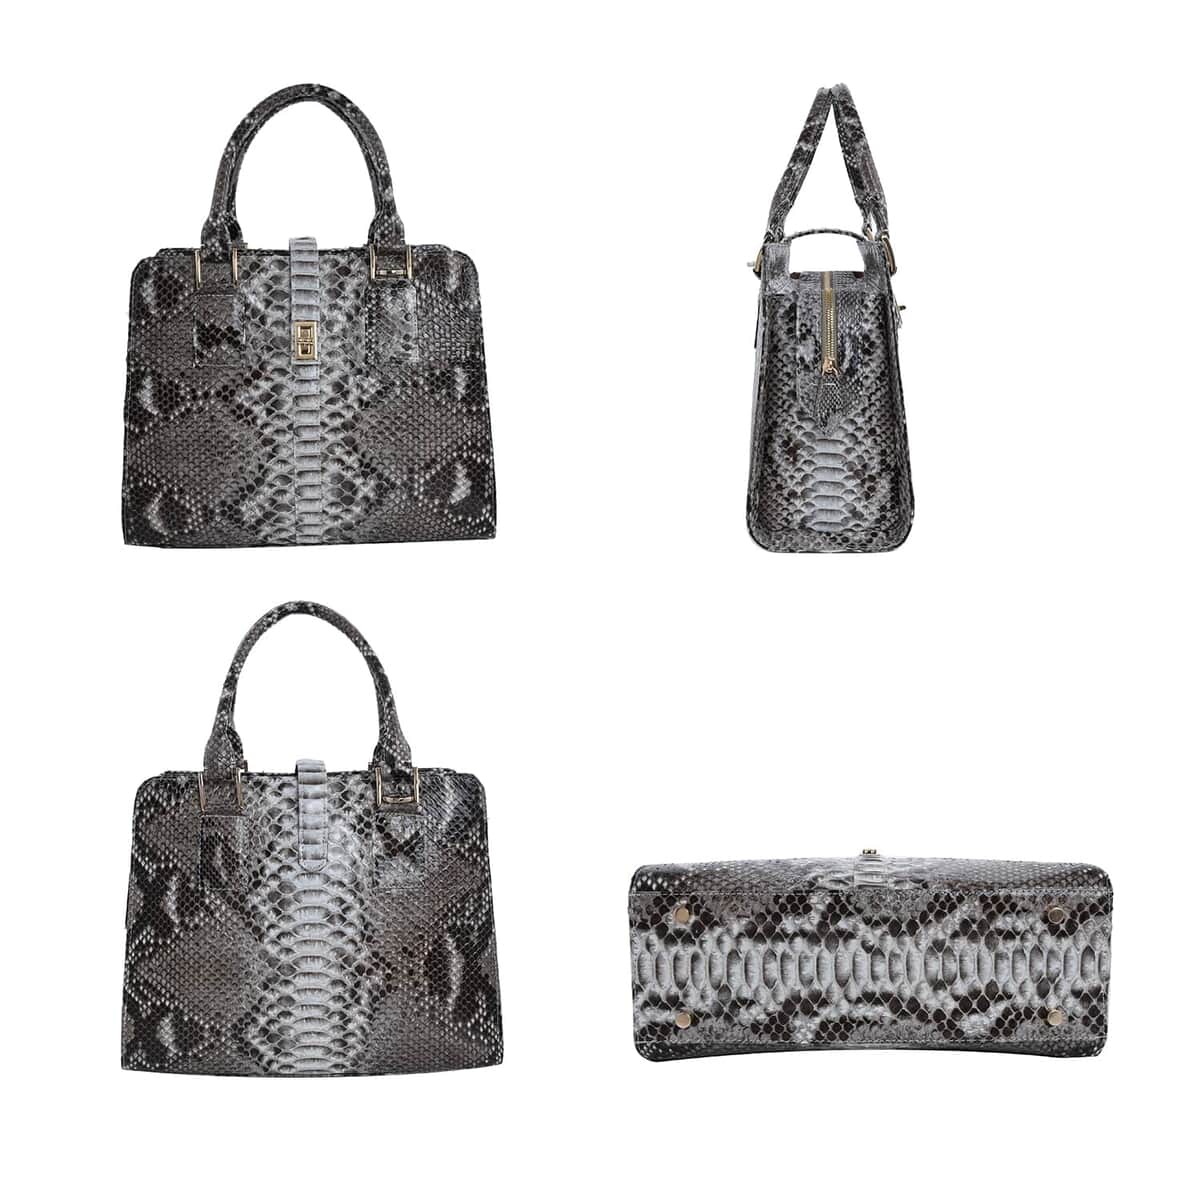 The Pelle Python Skin Bag Collection Natural Color 100% Genuine Python Leather Tote Bag, Shoulder Handbag, Designer Tote Bag For Women image number 3